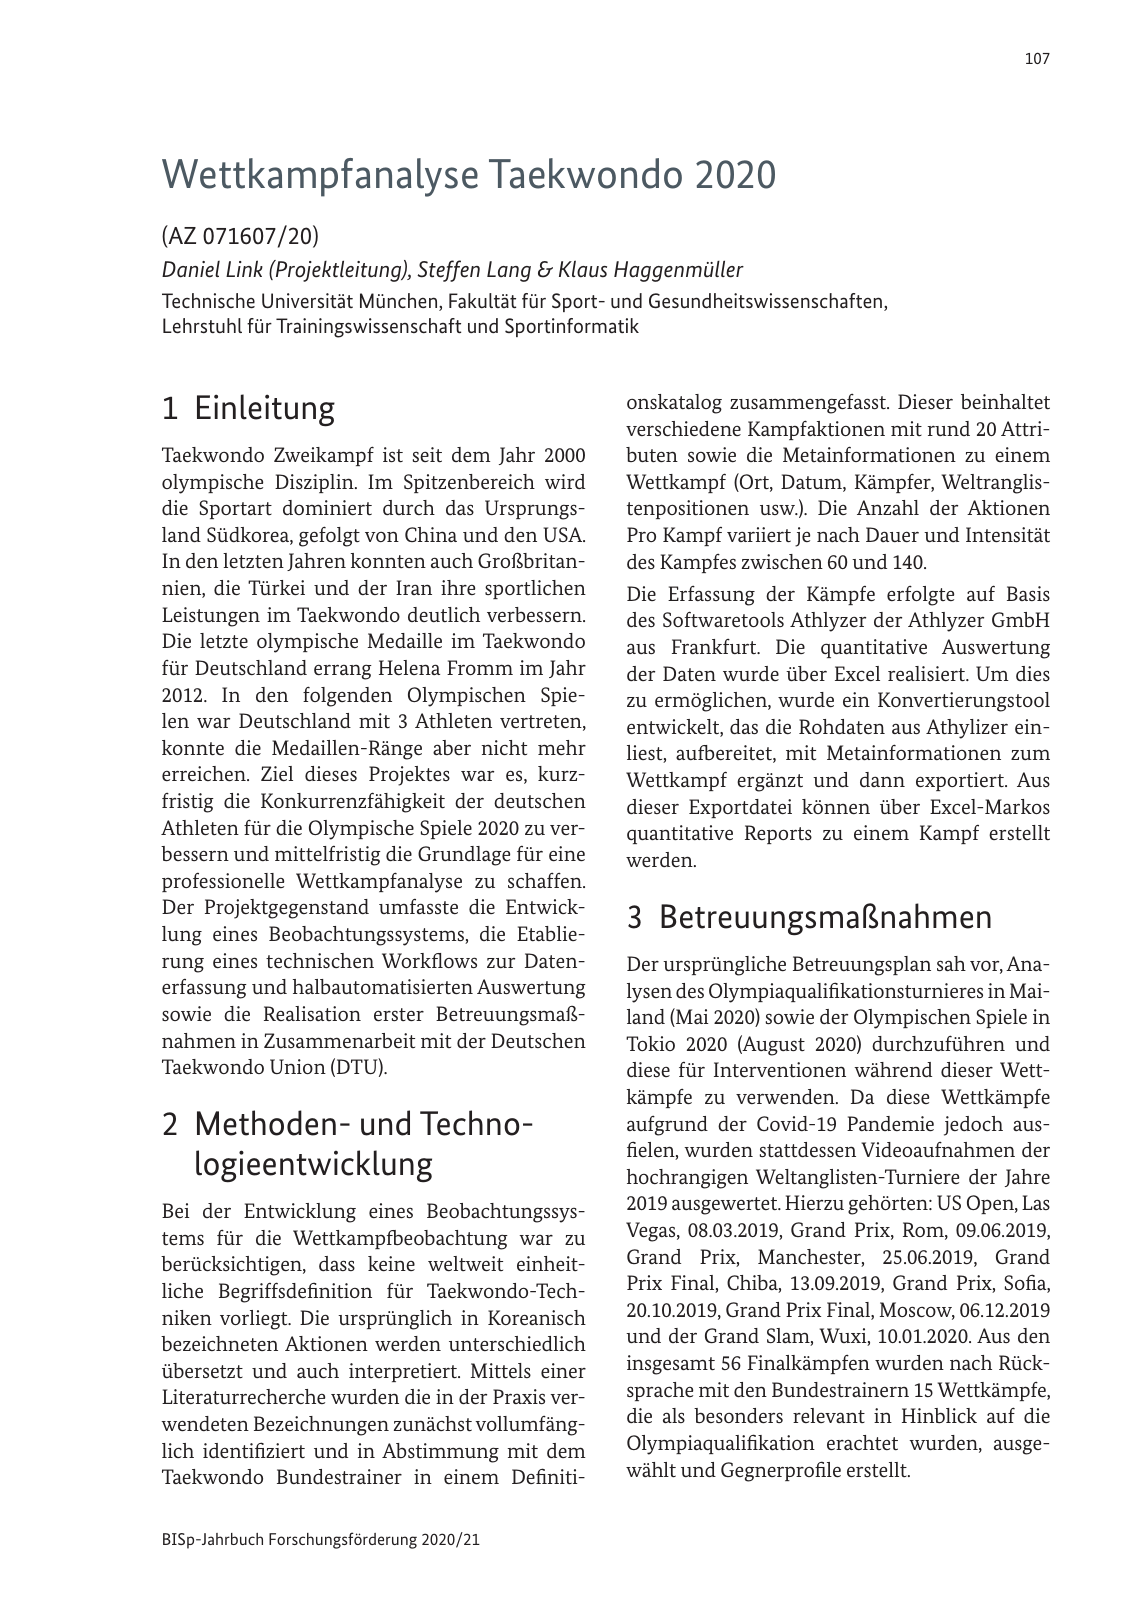 Vorschau BISp-Jahrbuch 2020/21 Seite 109